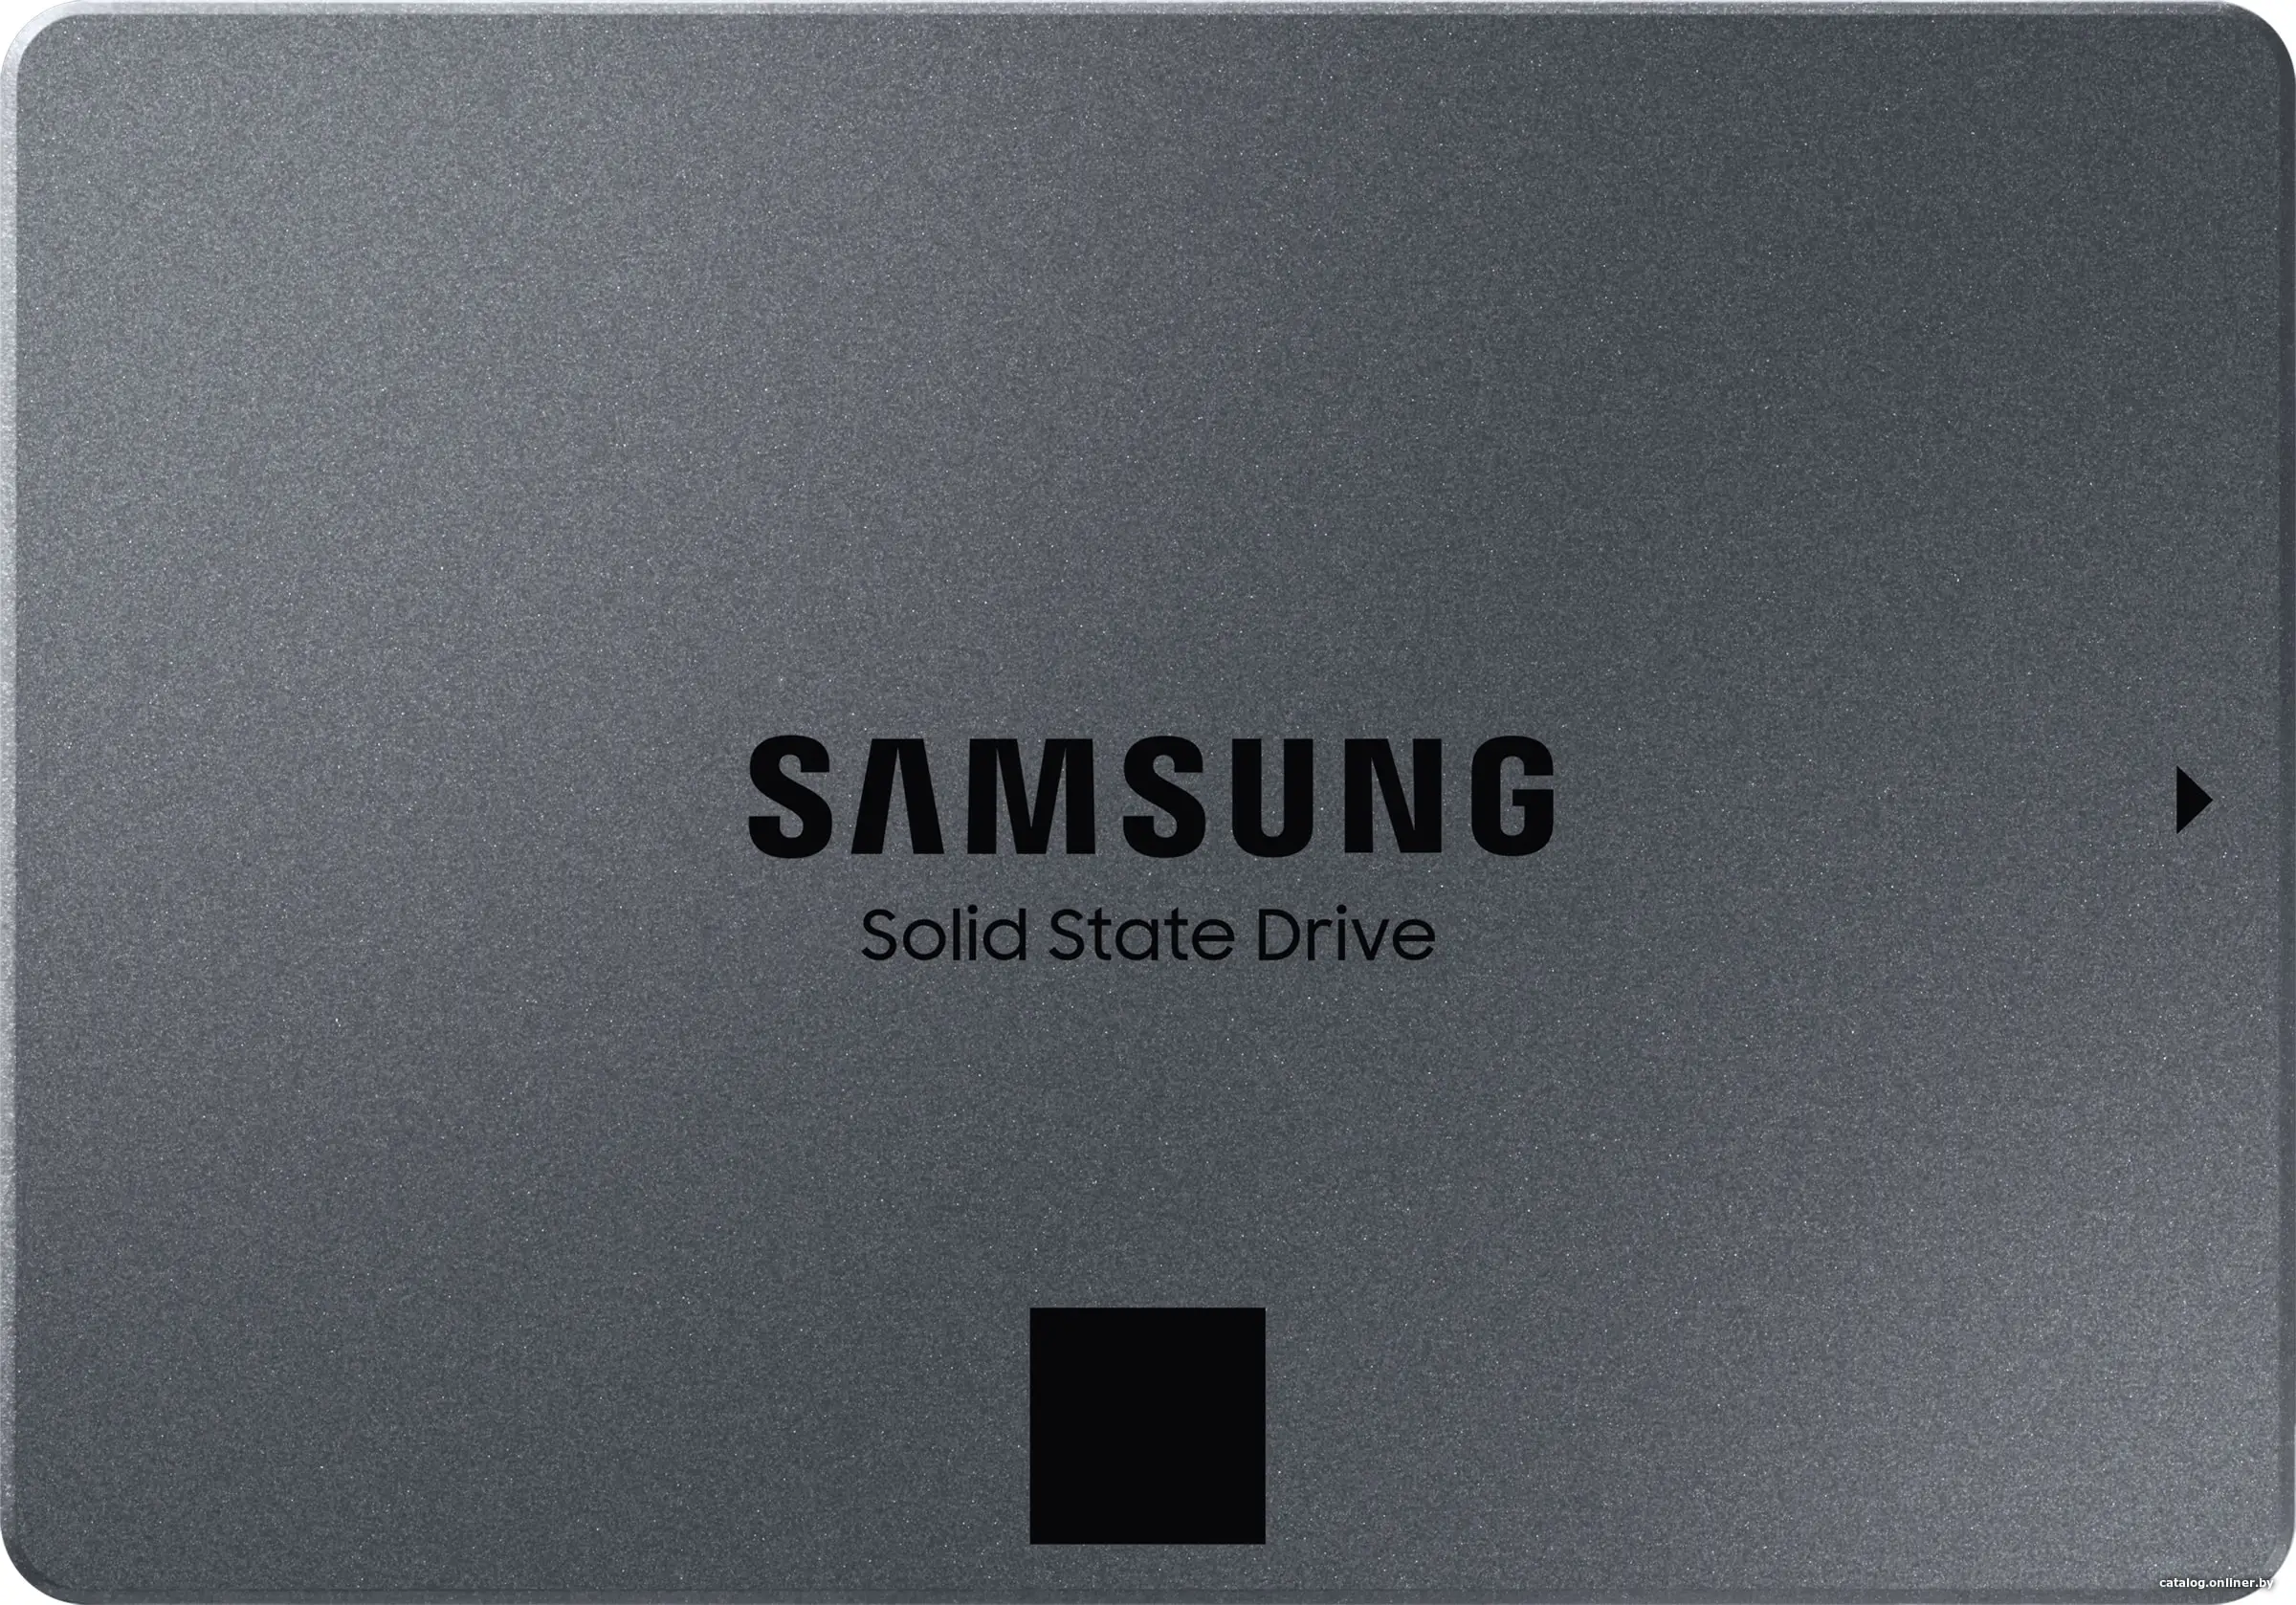 Купить SSD диск Samsung 870 QVO 1TB (MZ-77Q1T0BW), цена, опт и розница